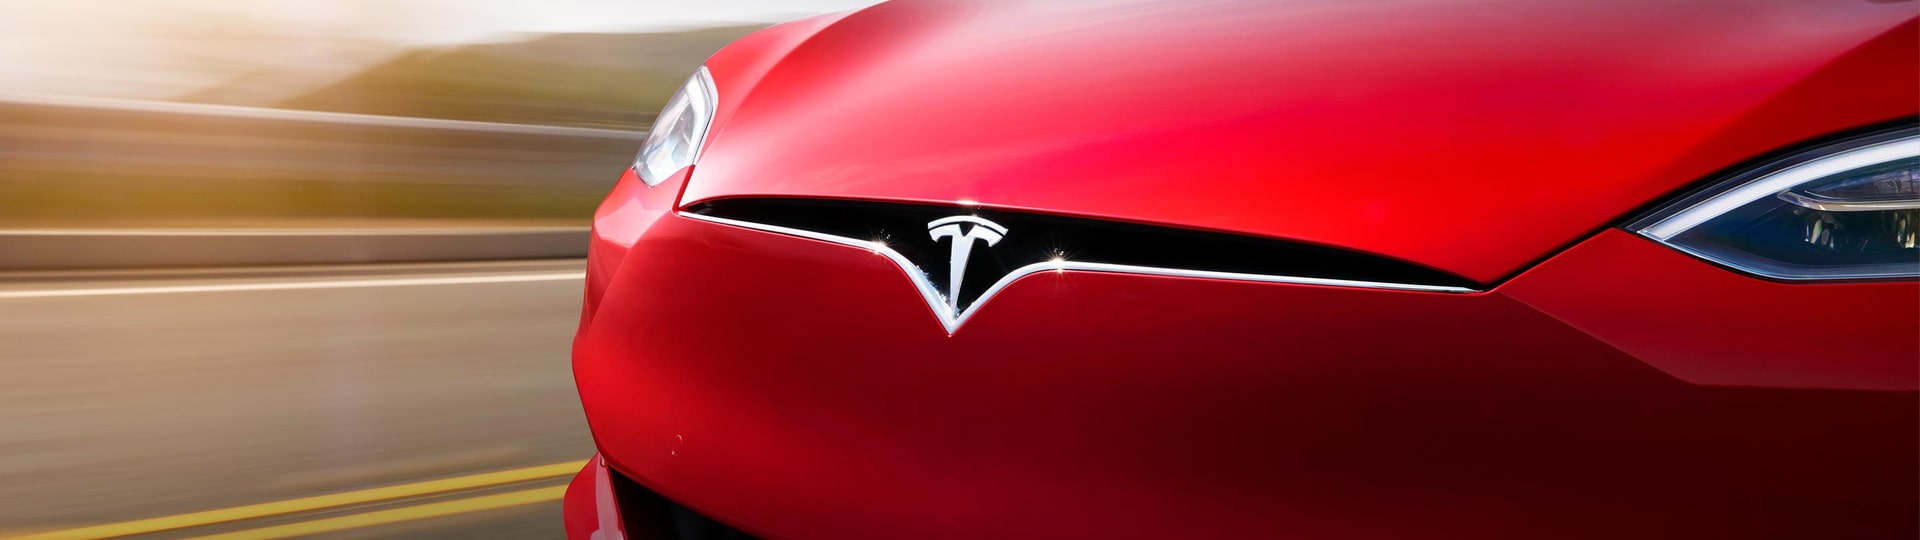 Tesla ve čtvrtletí zdvojnásobila zisk